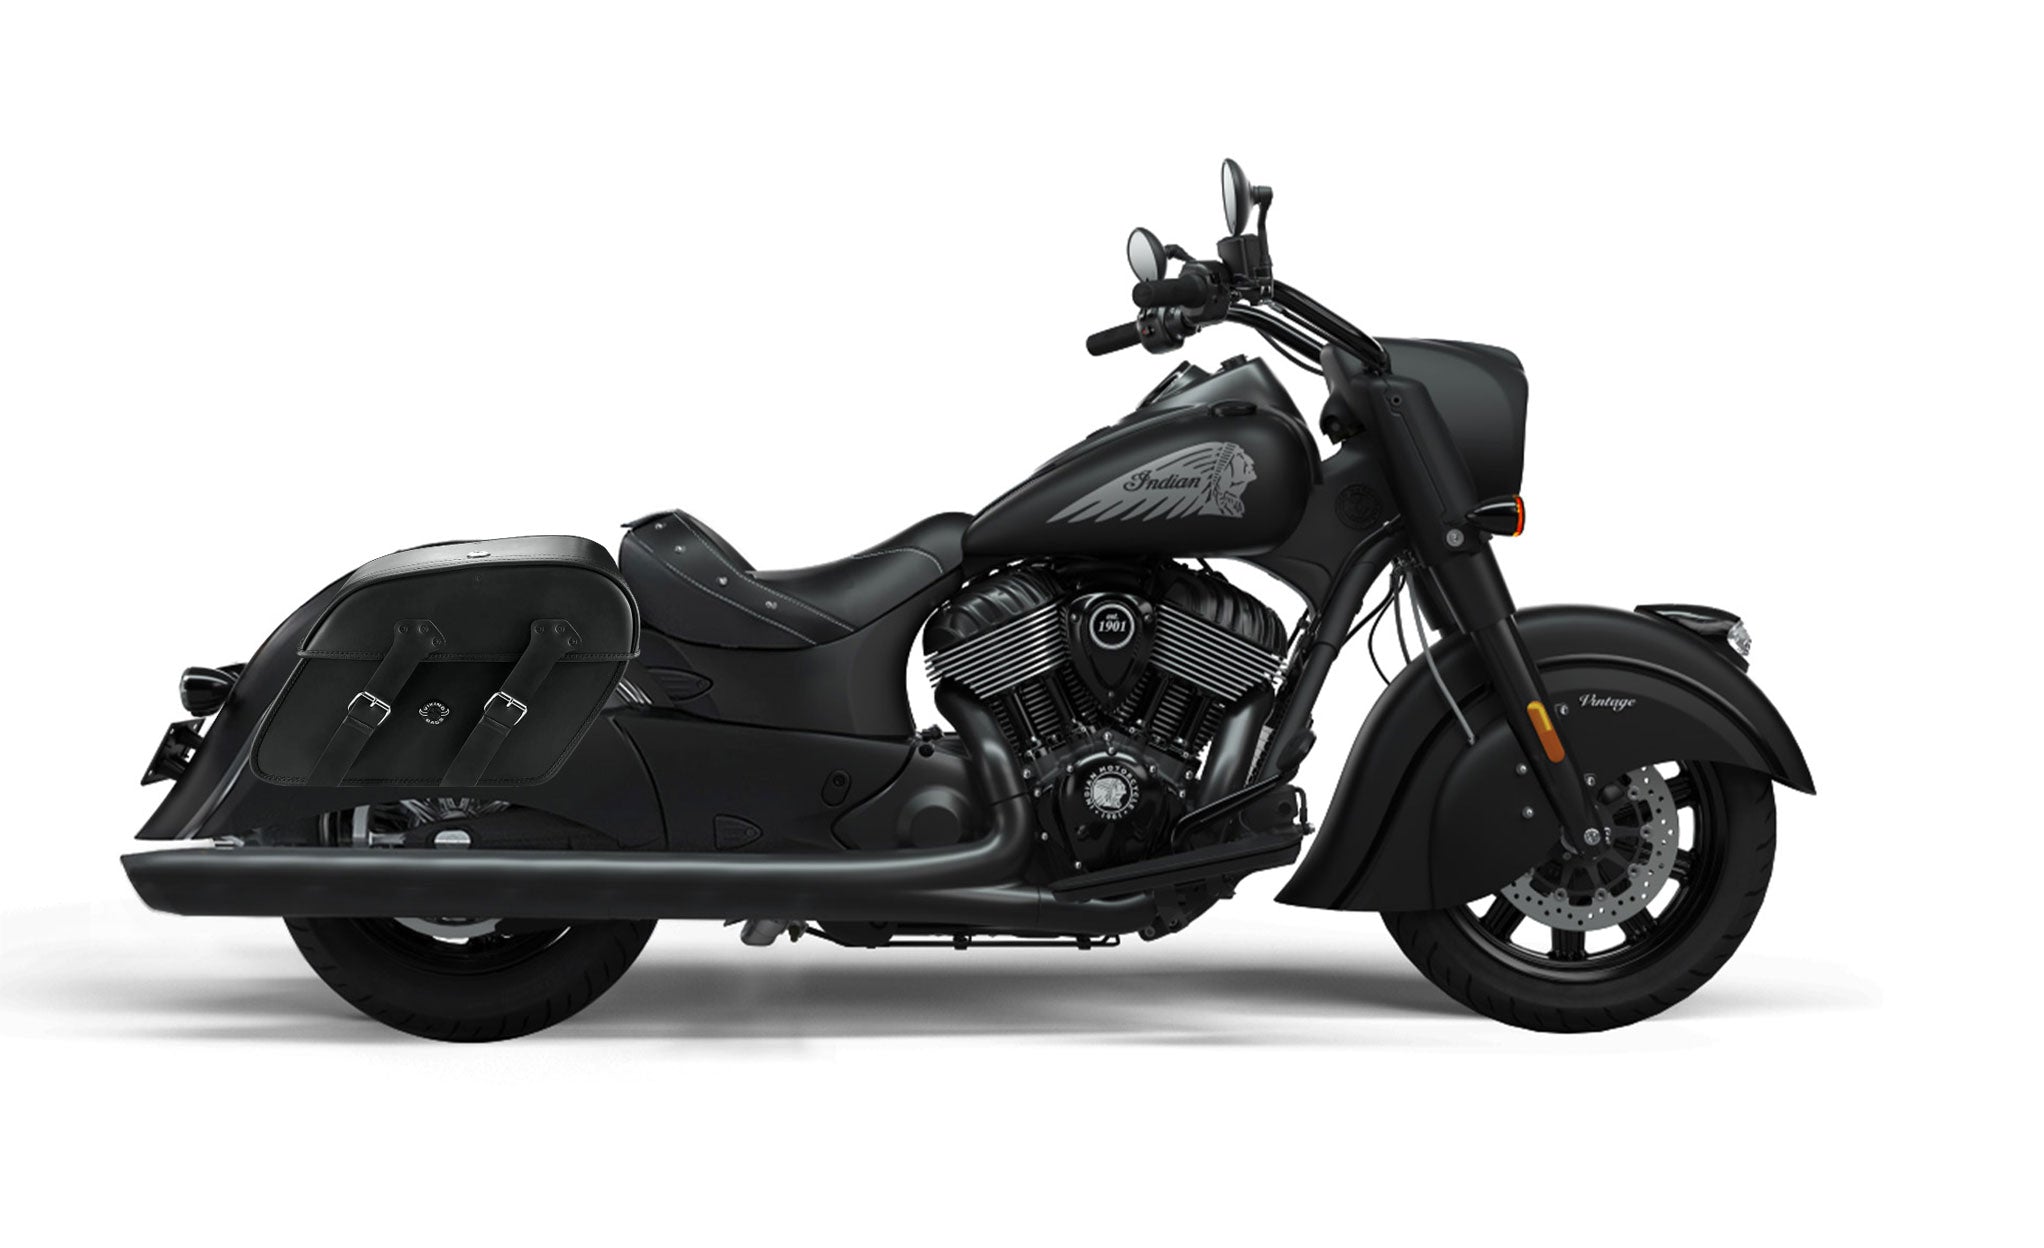 Viking Raven Extra Large Indian Vintage Darkhorse Leather Motorcycle Saddlebags on Bike Photo @expand